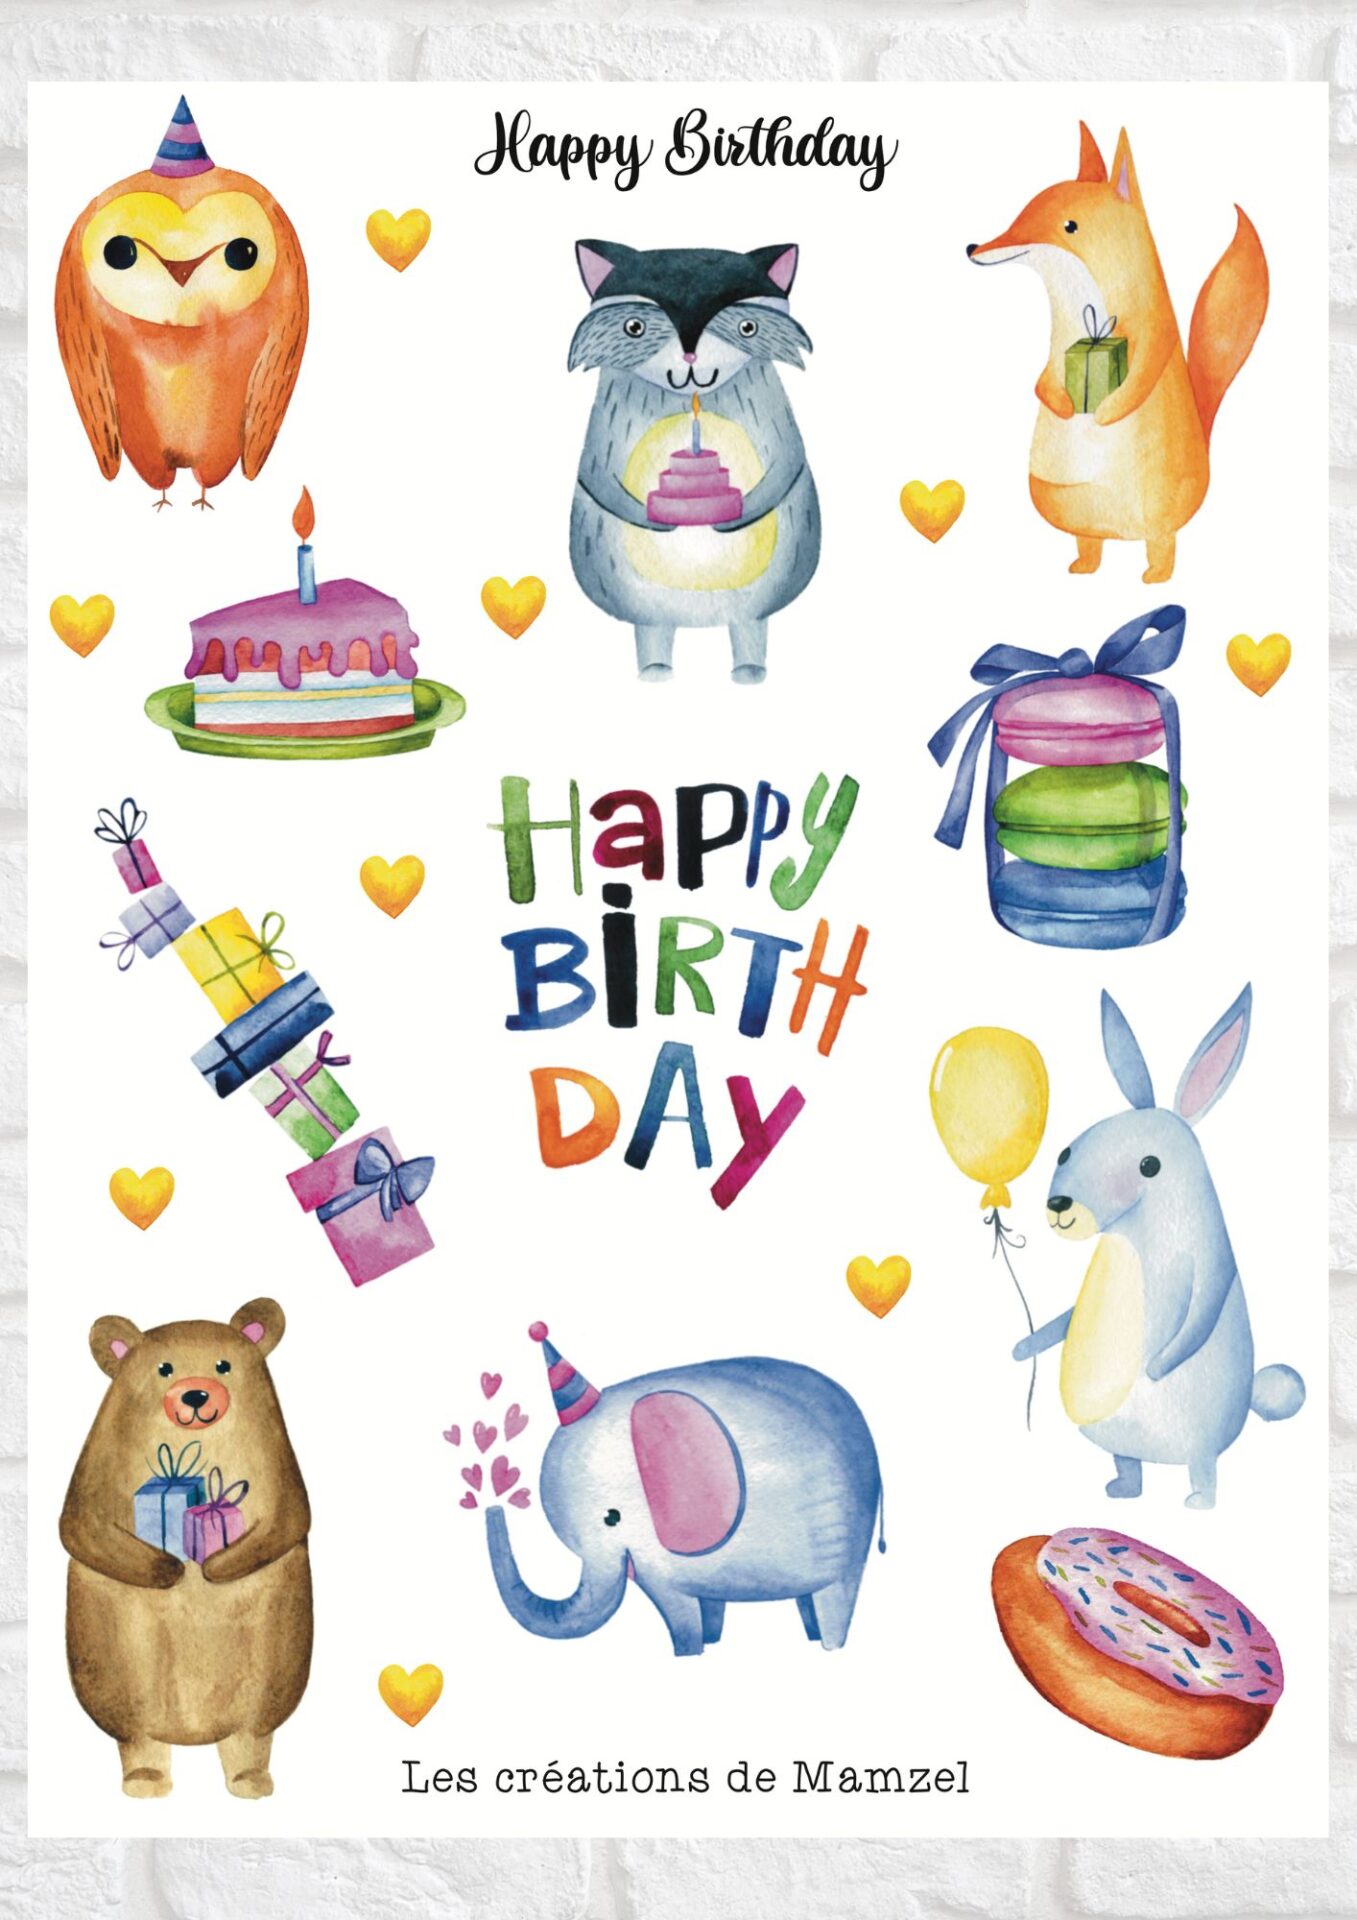 Vente planche de stickers - birthday party - stickers anniversaire - stickers enfants boutique en ligne stickers